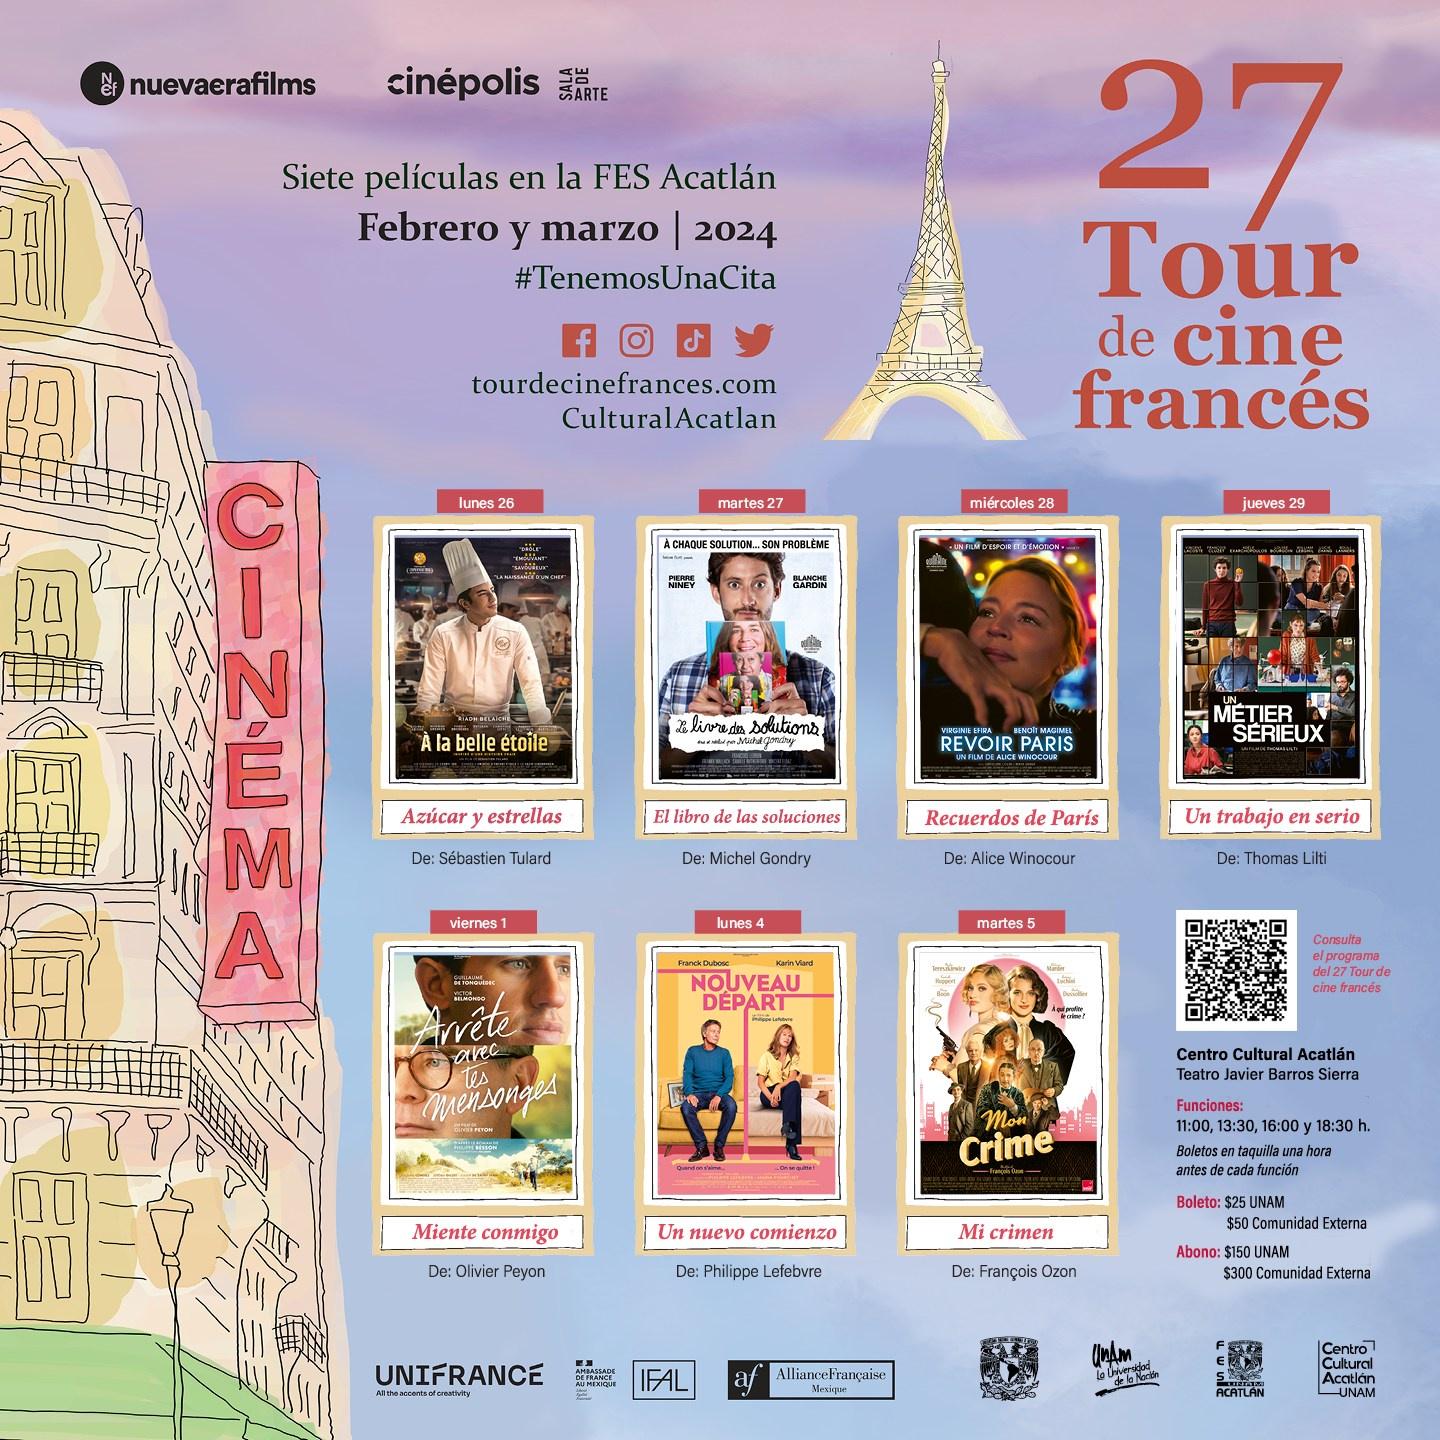 27 Tour de cine francés